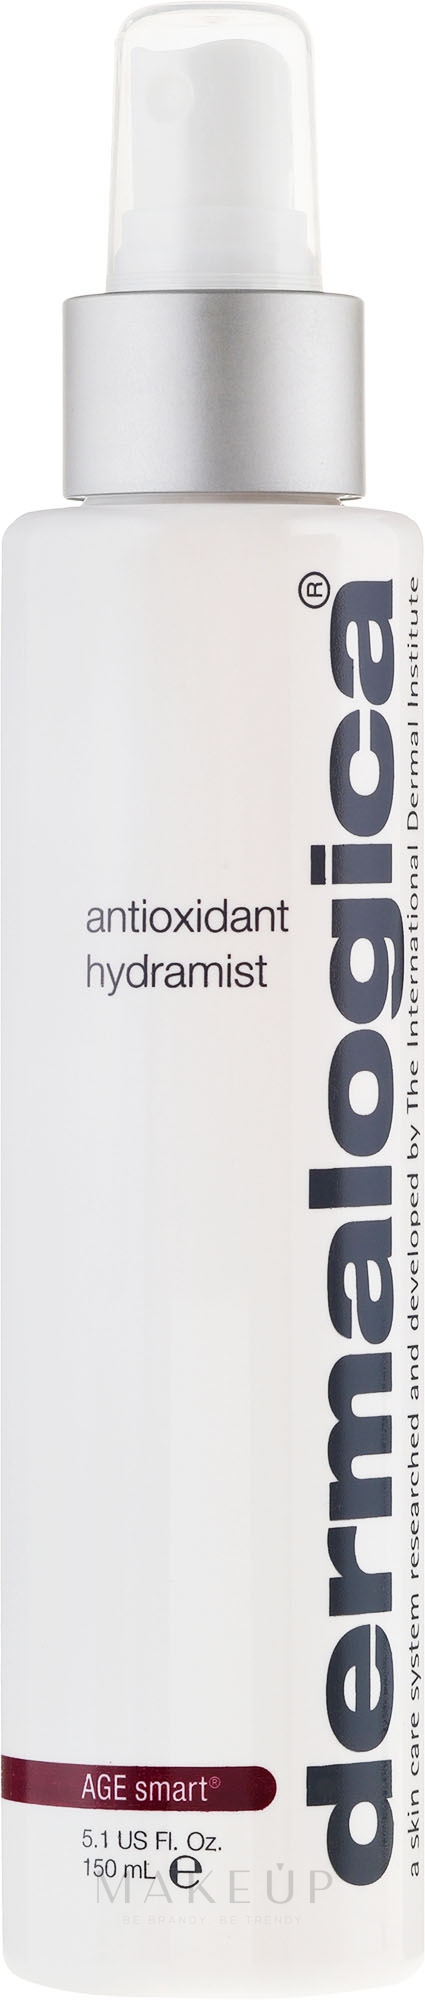 Erfrischender und antioxidativer Toner - Dermalogica Age Smart Antioxidant Hydramist — Bild 30 ml